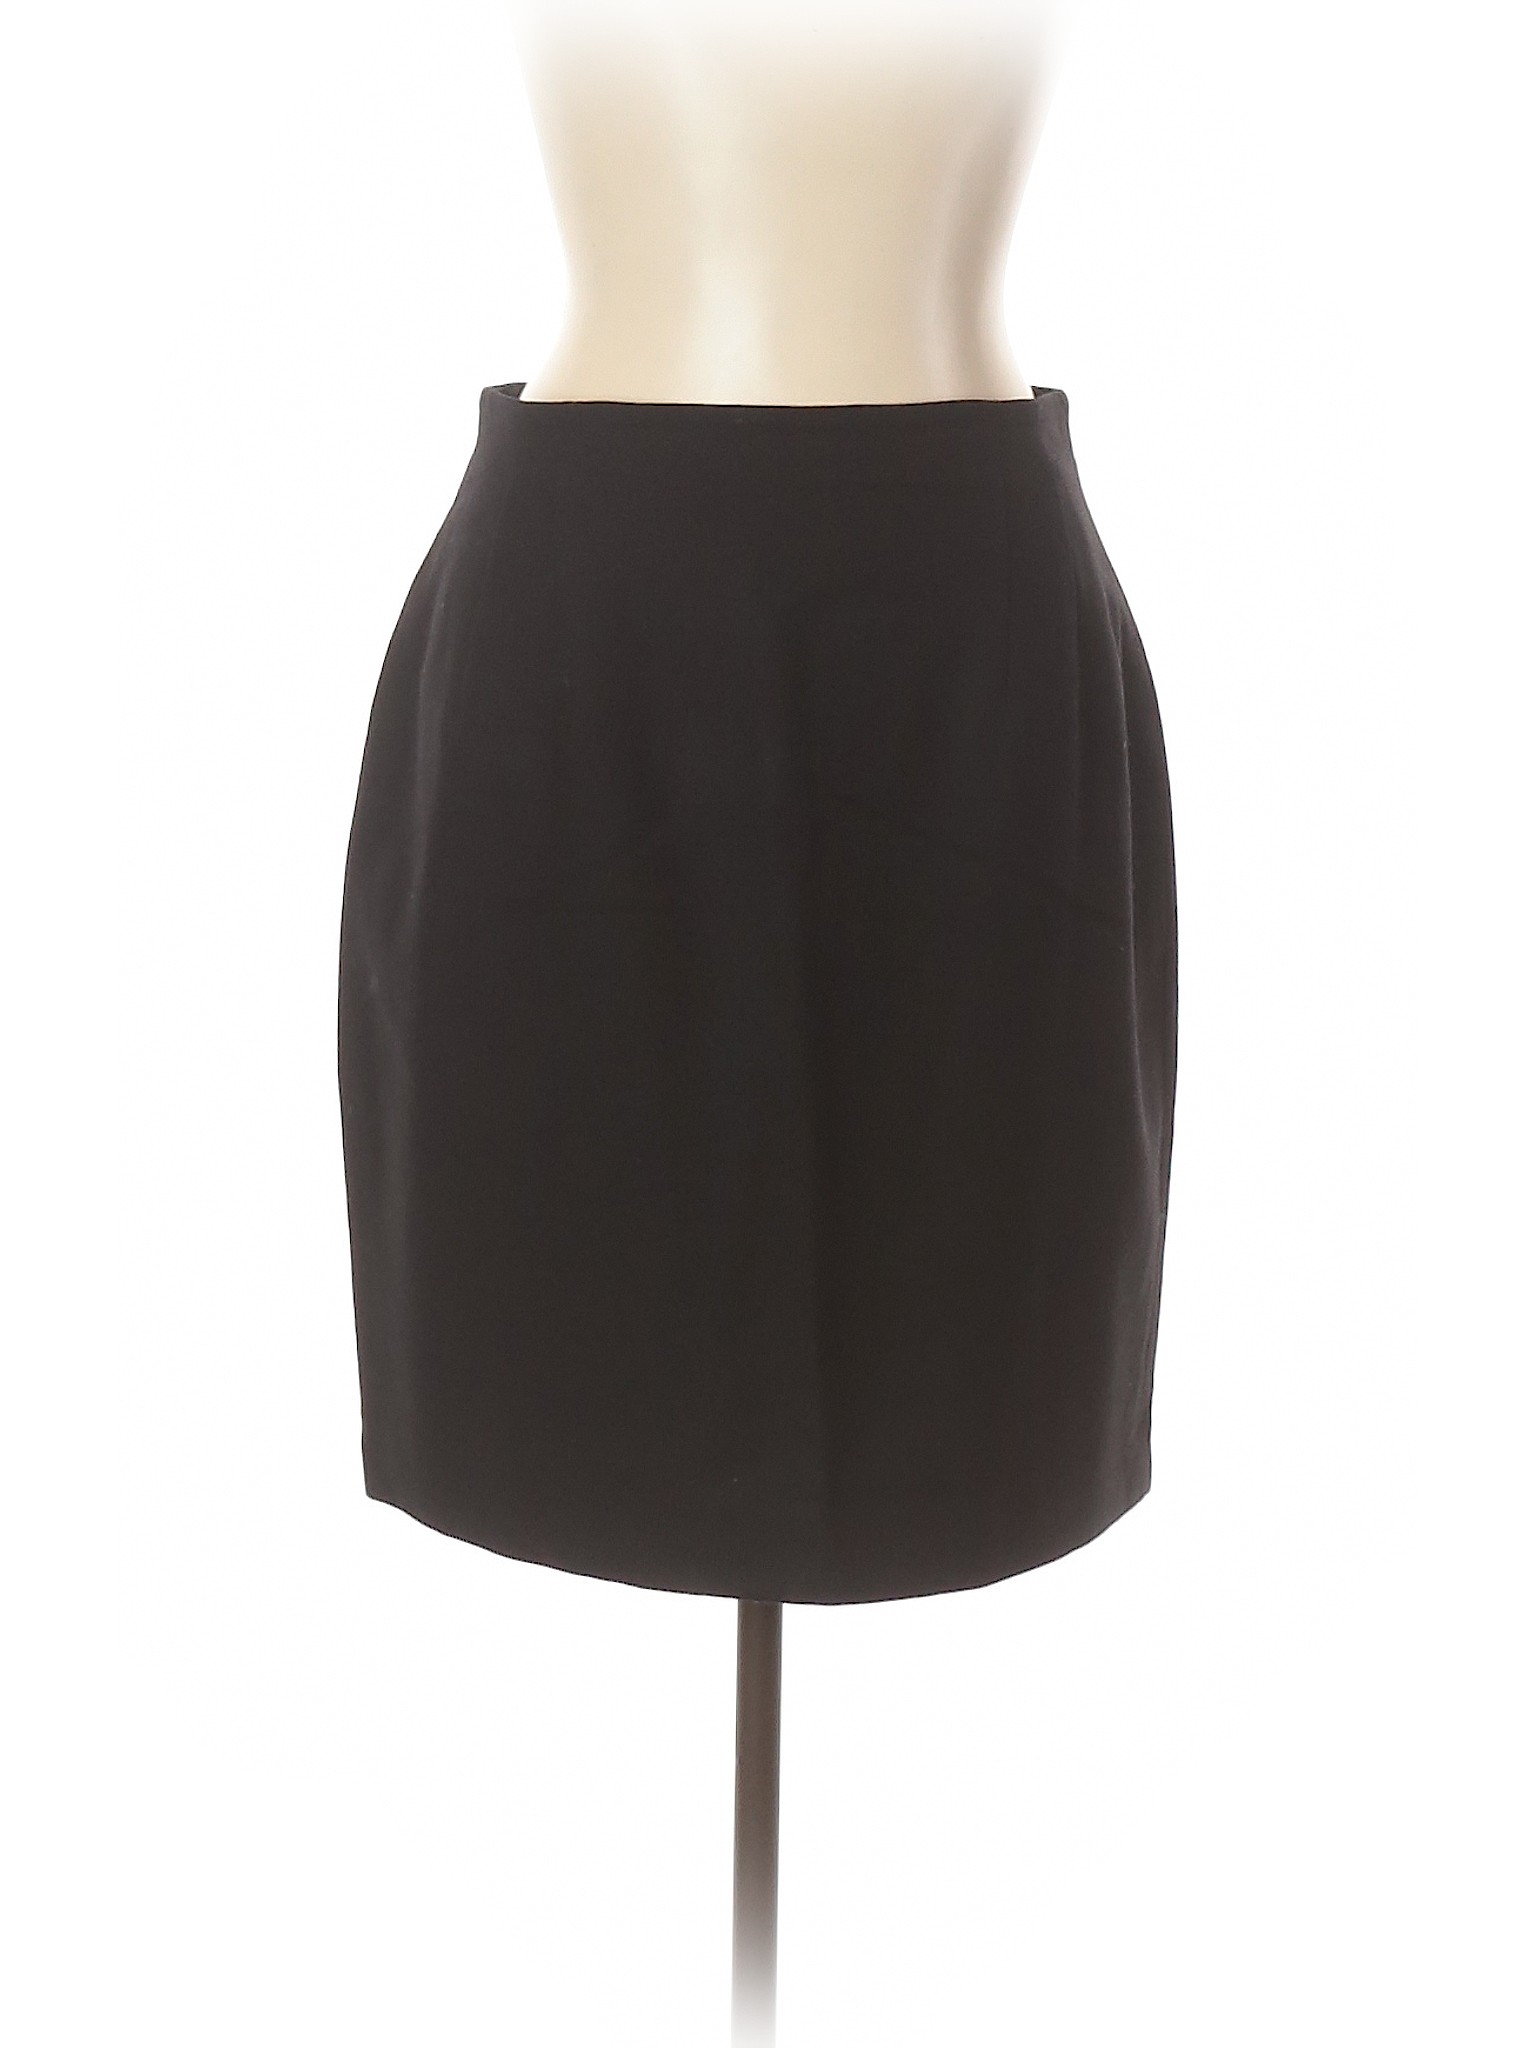 Giorgio Sant'Angelo Women Black Wool Skirt 12 | eBay